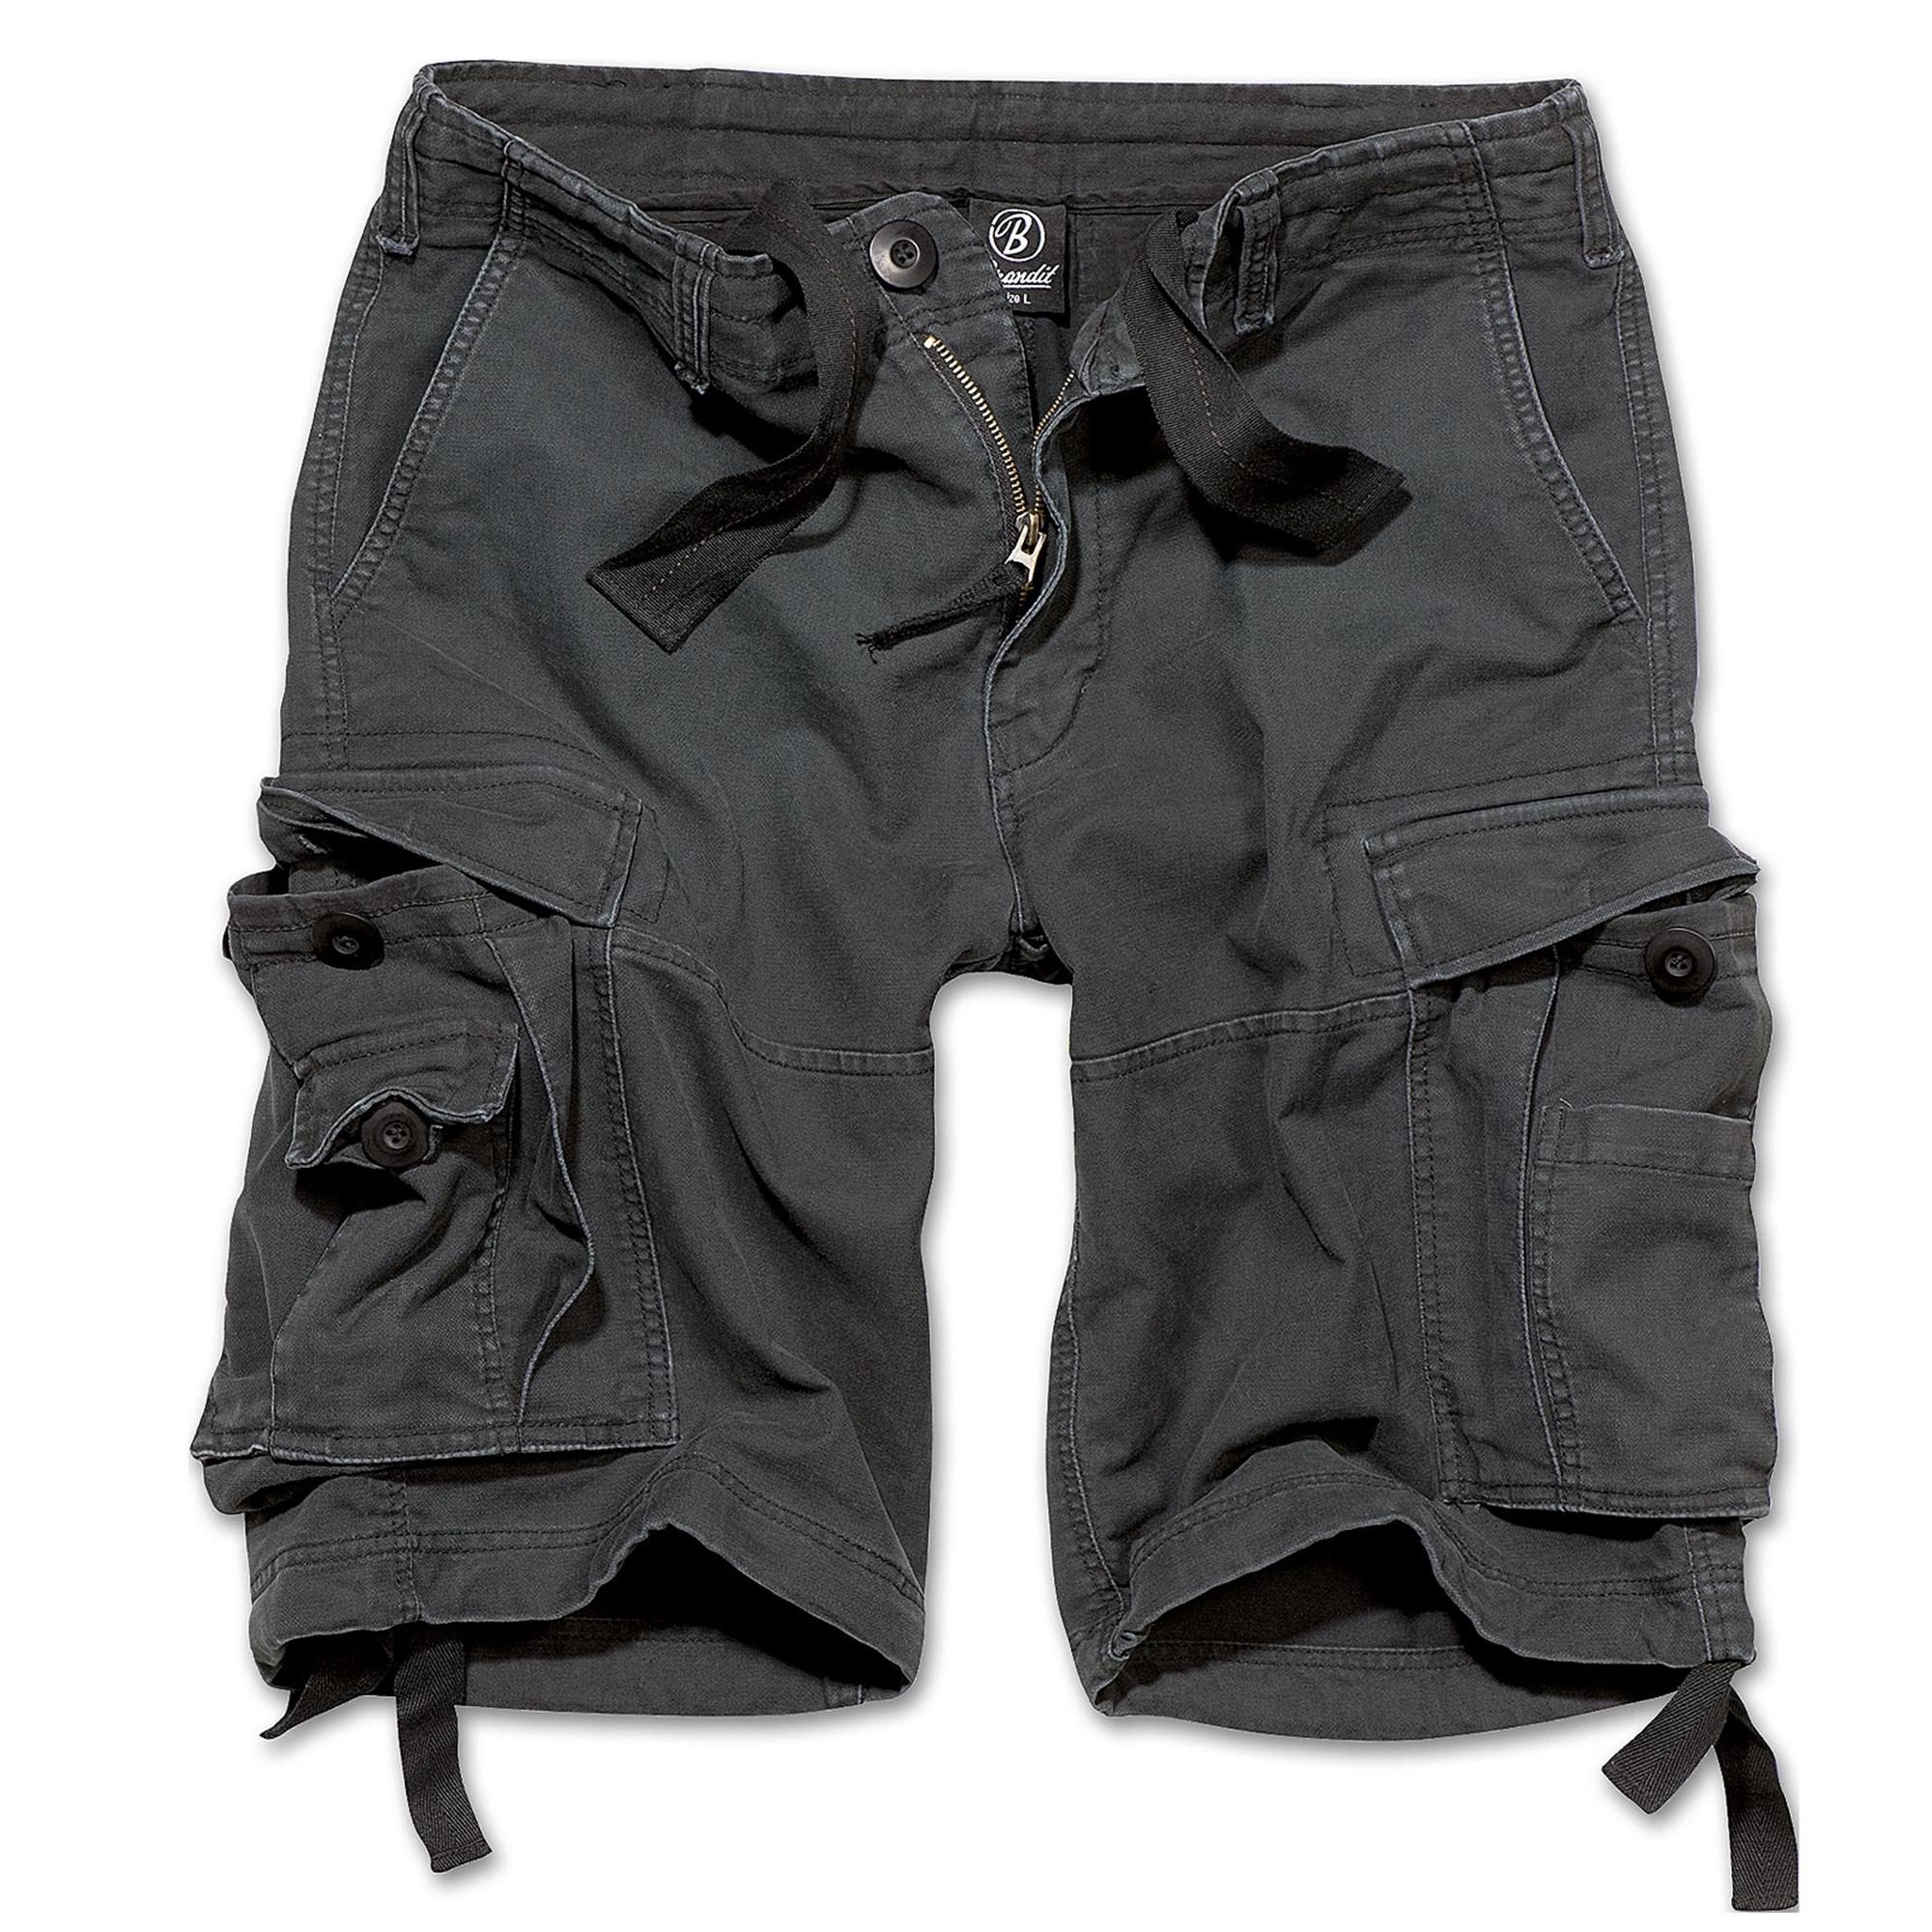 Herren Airborne Vintage Cargo Shorts Bermuda Shorts Mountain Shorts 3/4 Cargo Hose Viele Tasche 